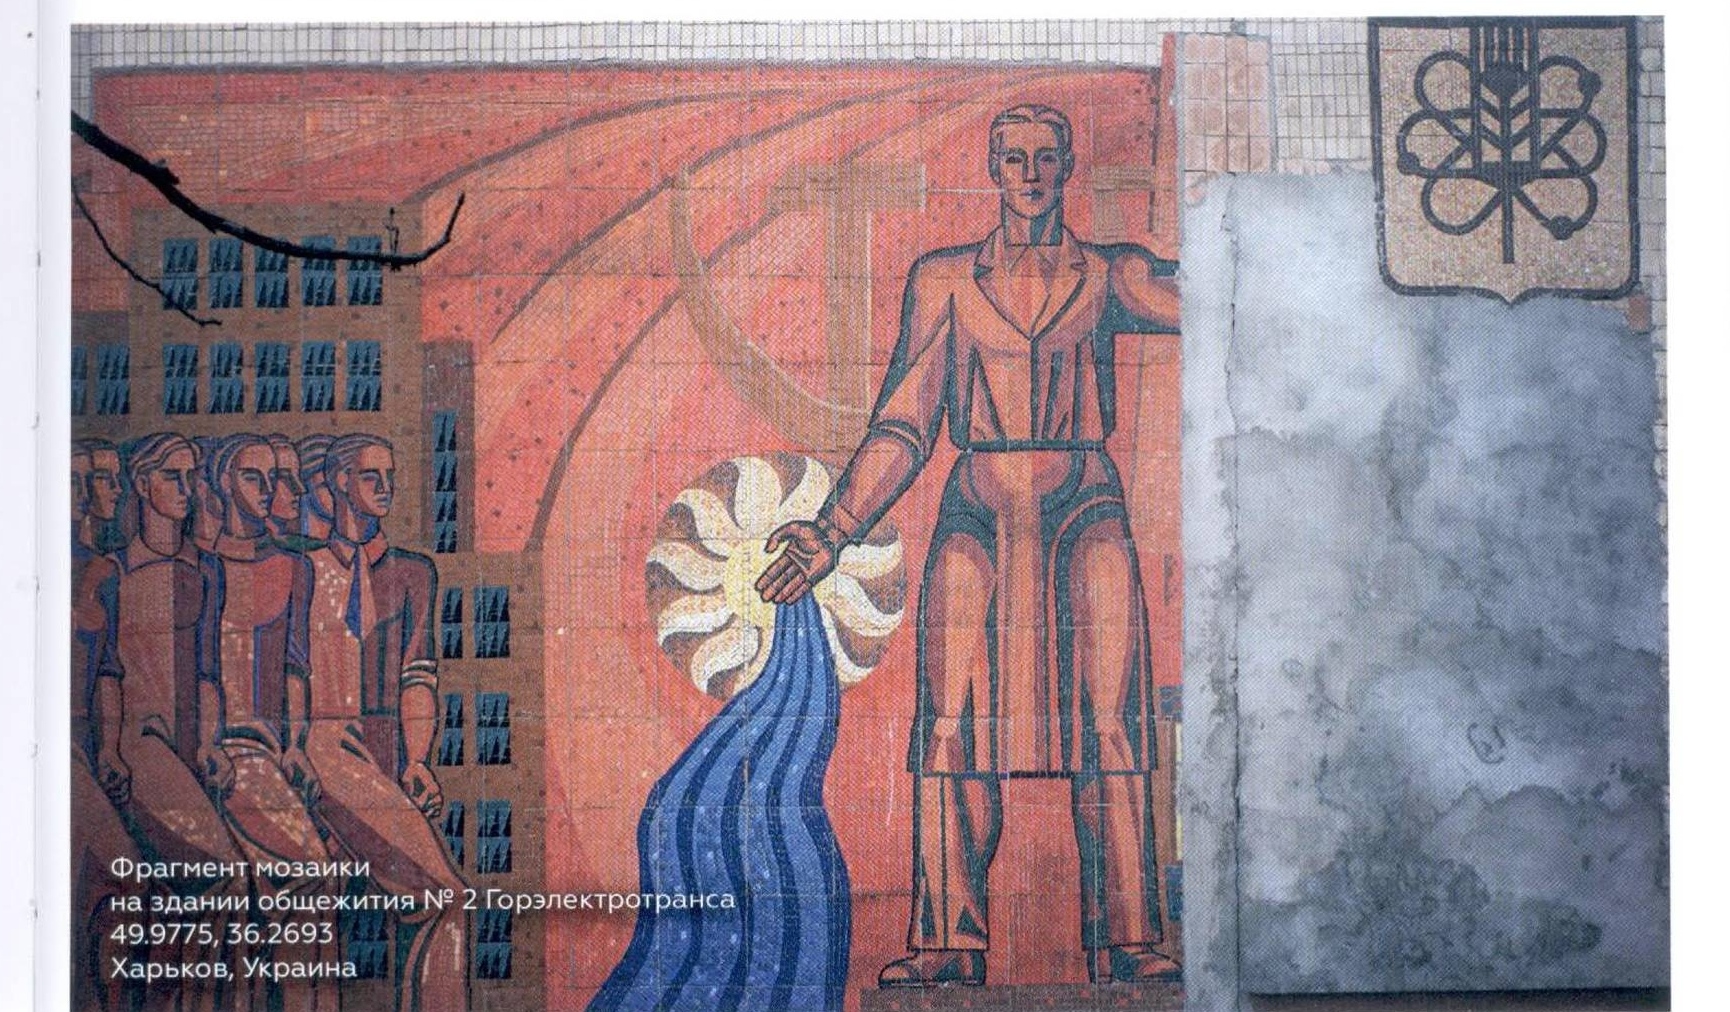 Мозаика на здании общежития № 2 Госэлектротранса (фрагмент). Харьков, Украина.